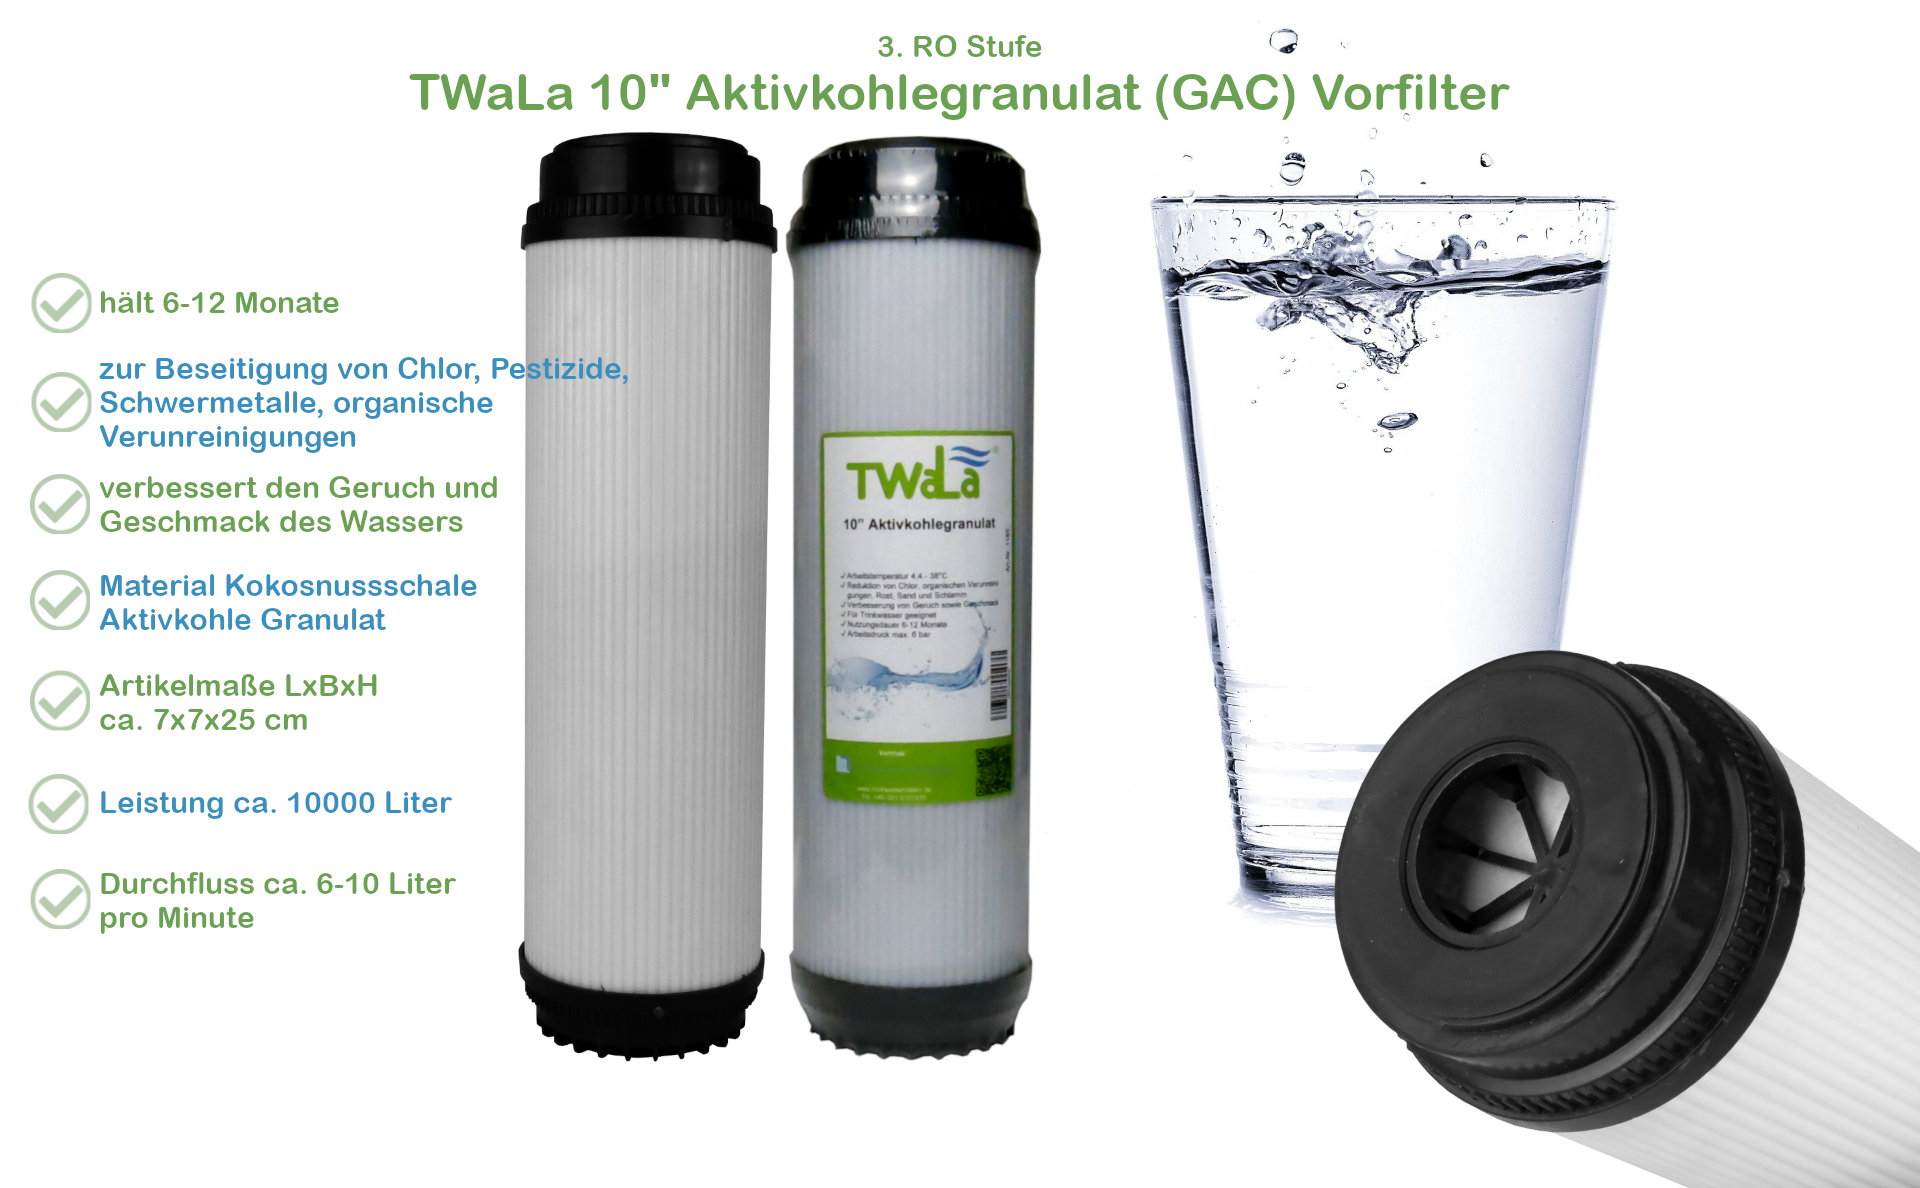 Hochwertiges Aktivkohle Granulat 1 Liter aus Kokosnussschalen für u.a.  Wasserfilter, Wasserstore